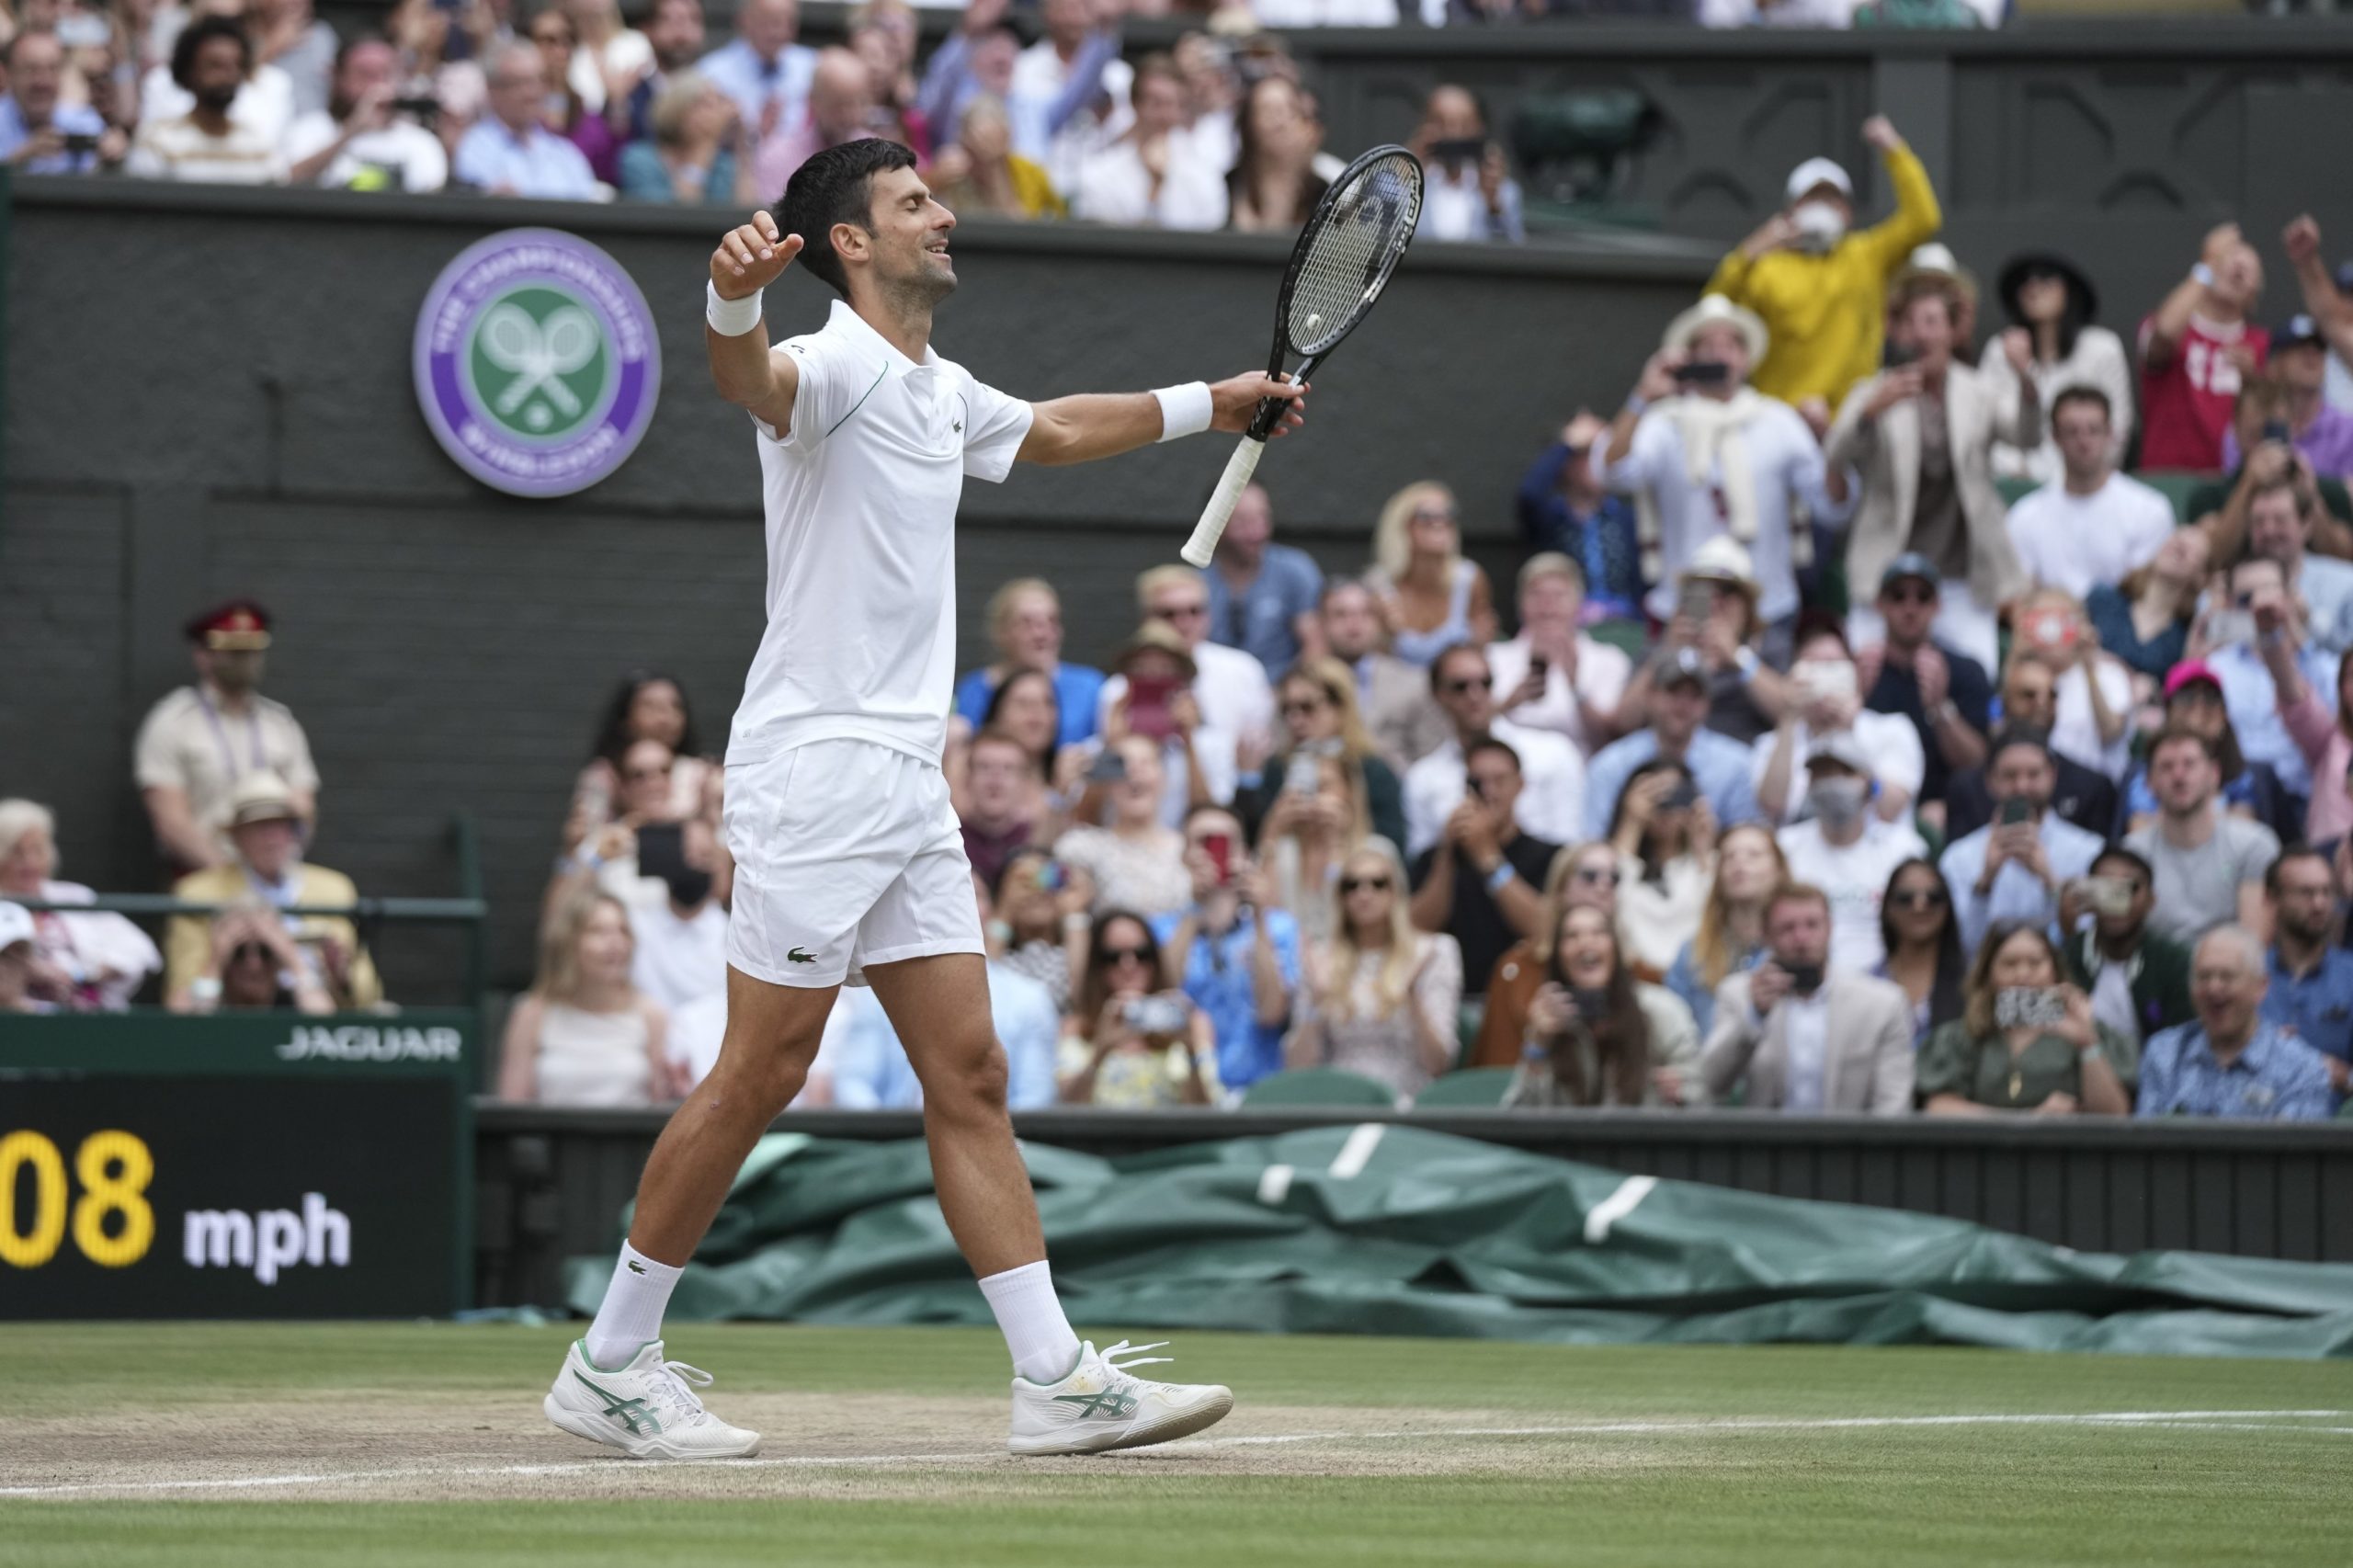 Wimbledon 2021 draw: Full draw, seeds, bracket, Australians, first round  matches, Roger Federer, Novak Djokovic, news